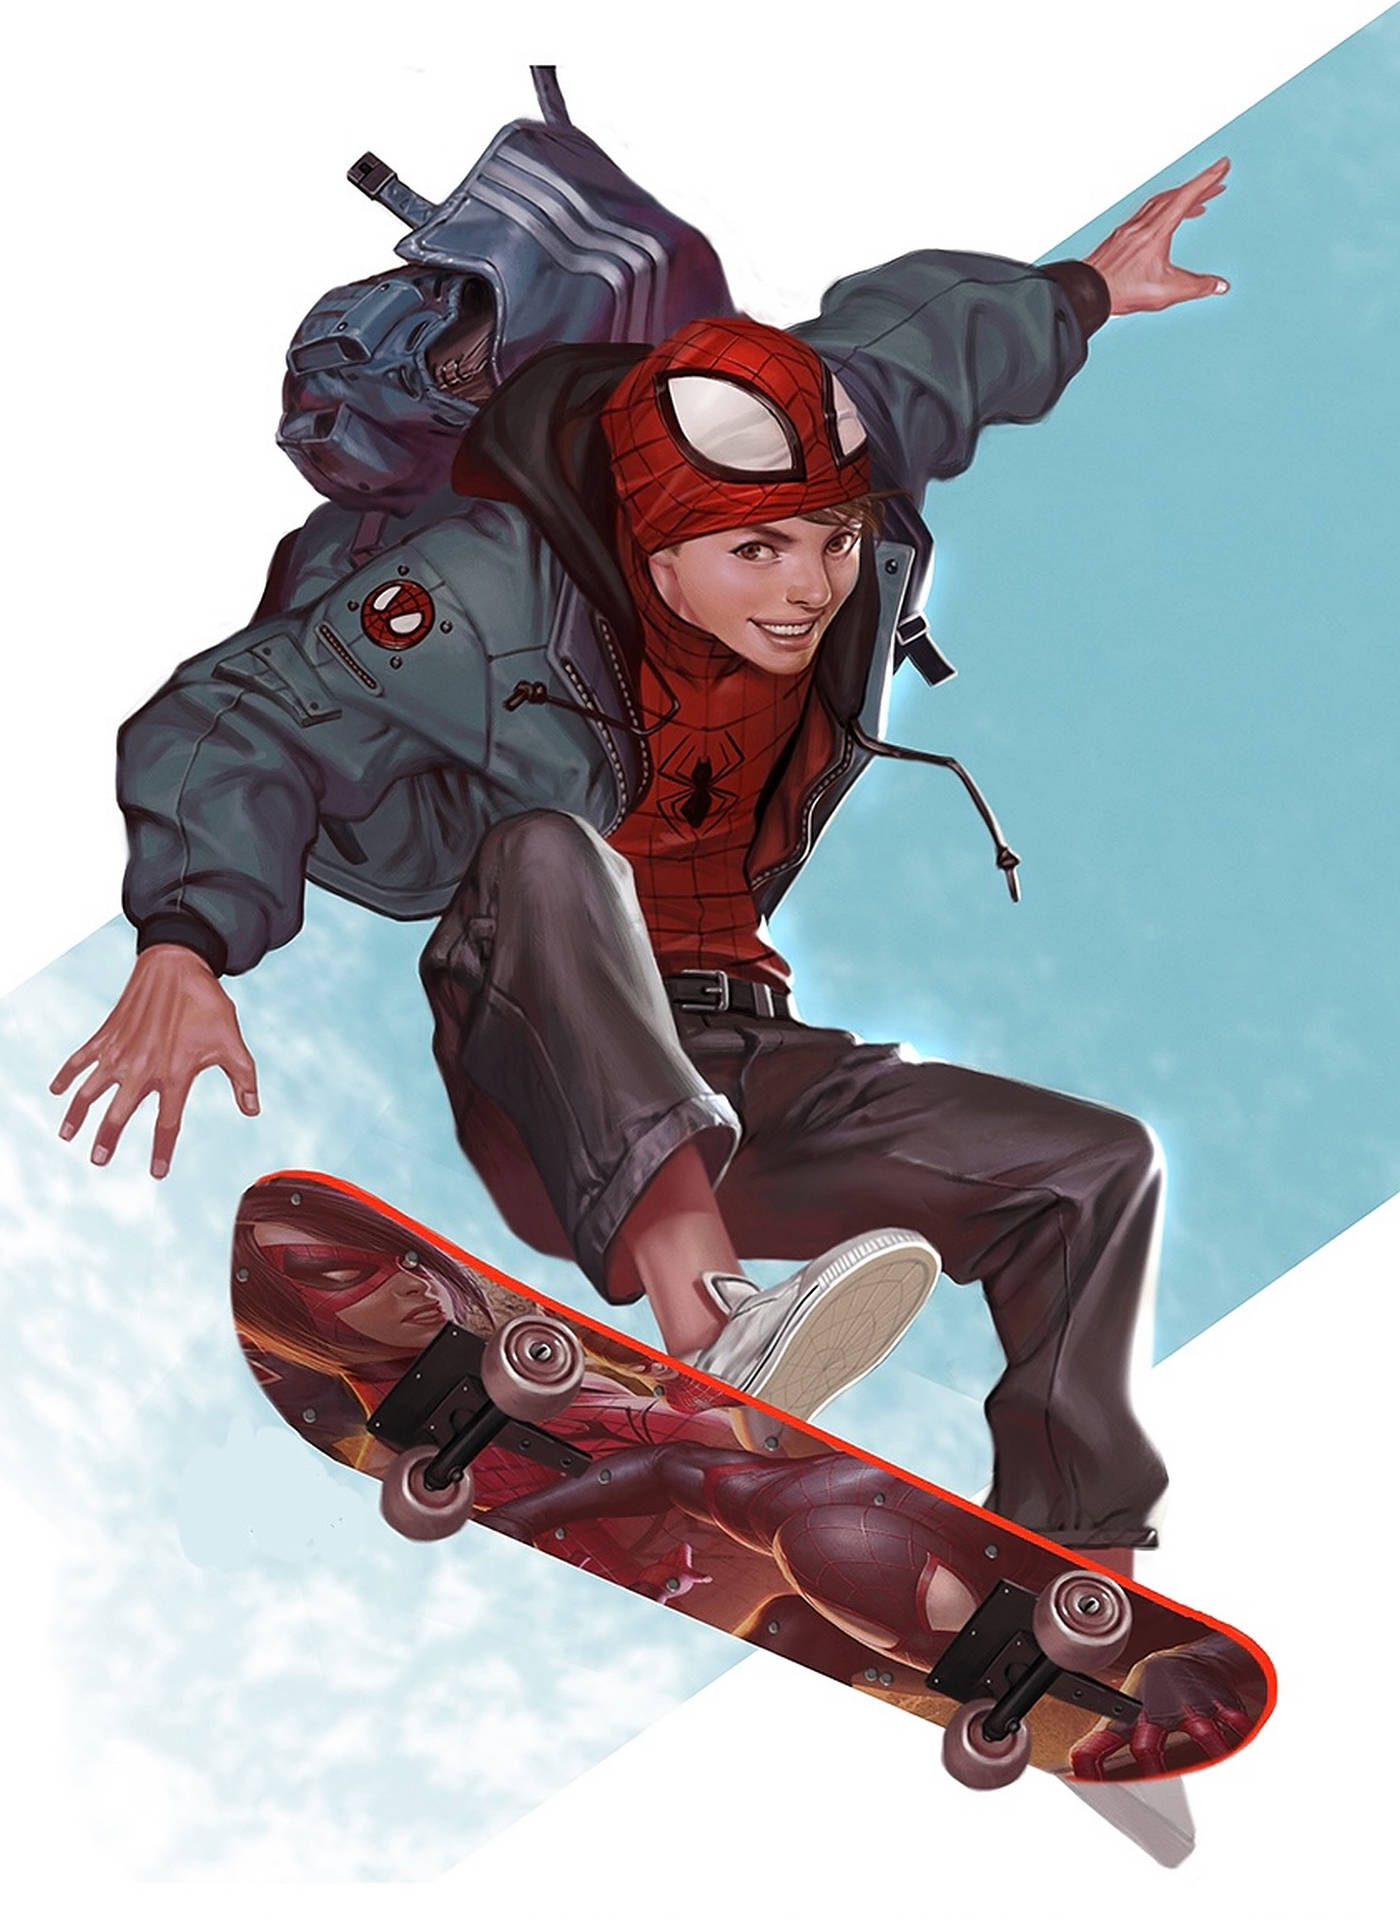 Aesthetic Superhero Skater Boy